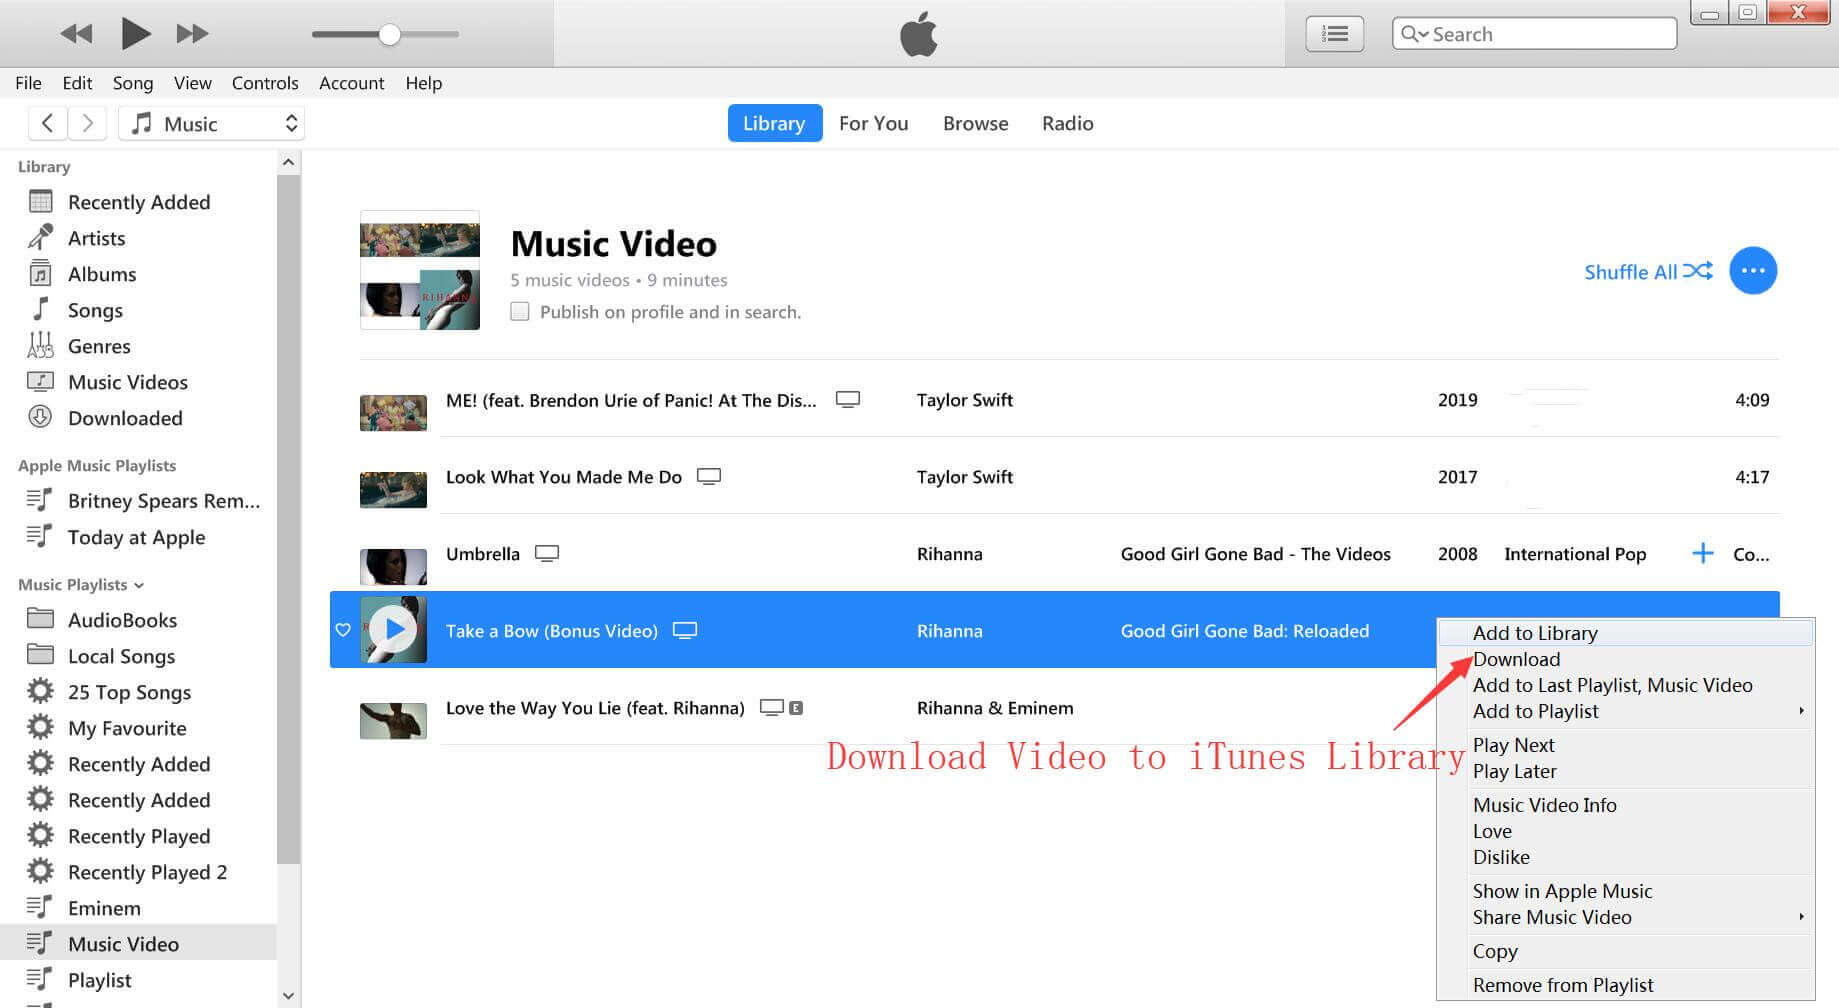 télécharger des vidéos iTunes sur la bibliothèque